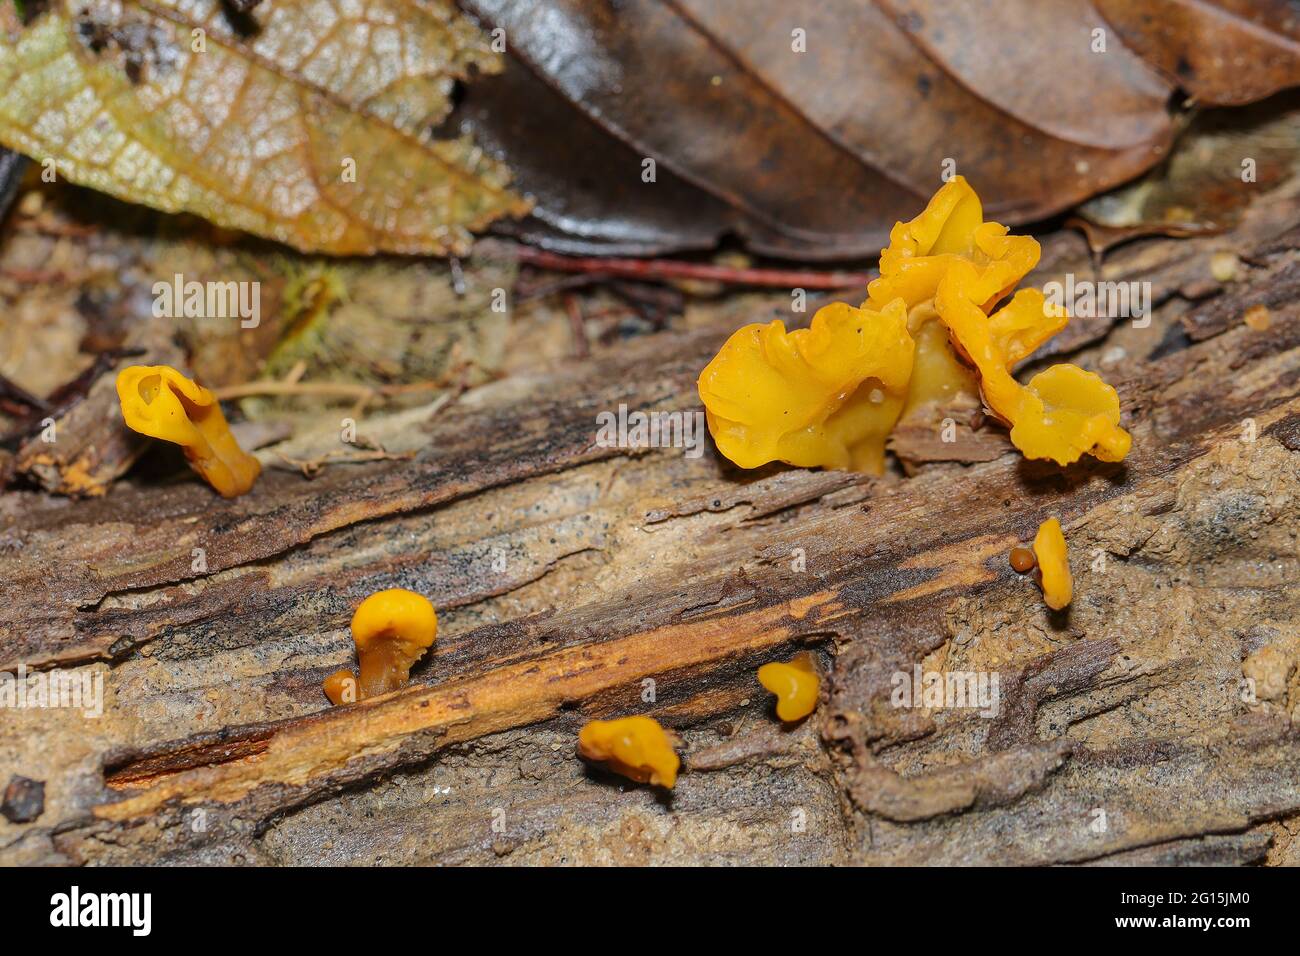 Grupo de hongos anaranjados suaves que crecen en un tronco de árbol muerto en una selva tropical Foto de stock